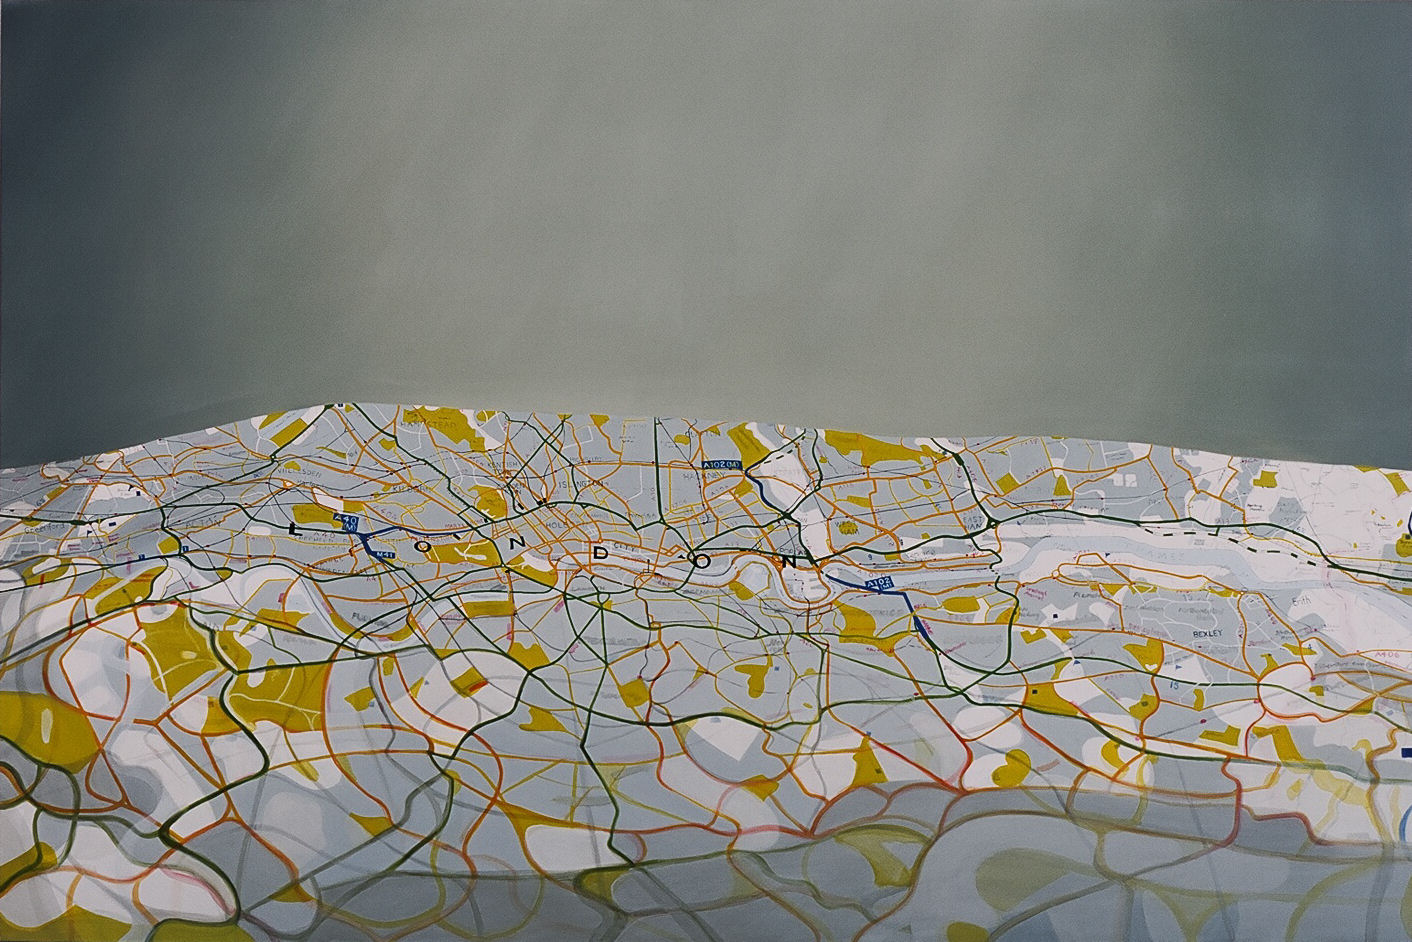 Emma J Williams 'London' 2002 oil on canvas